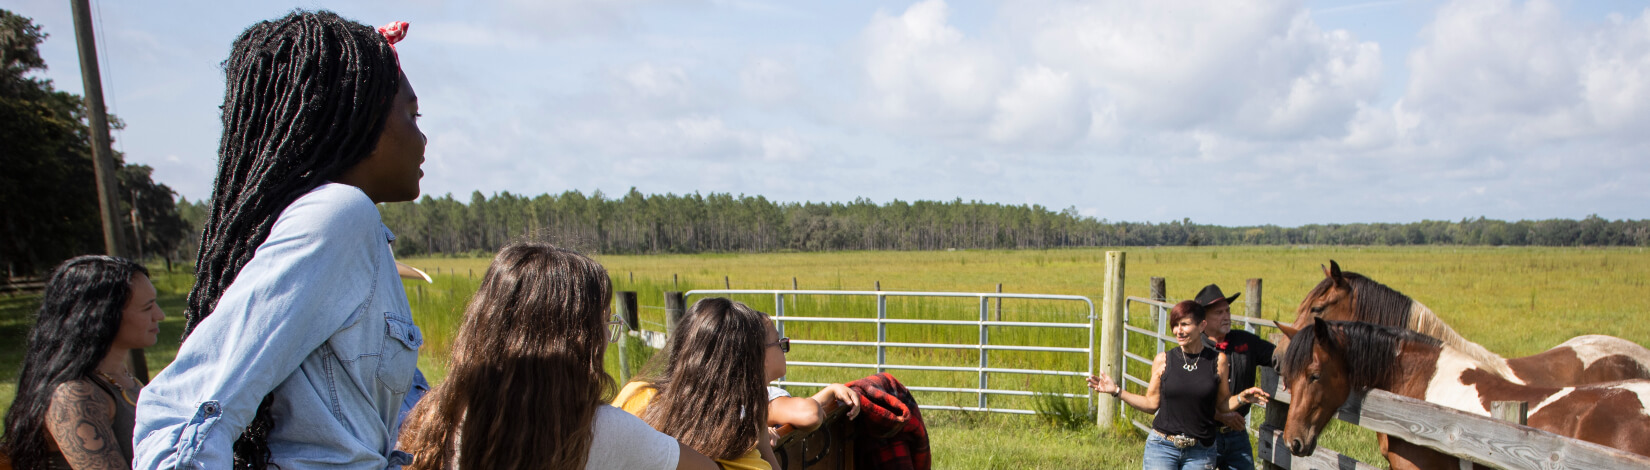 Agri-tourism participants on a cattle ranch tour